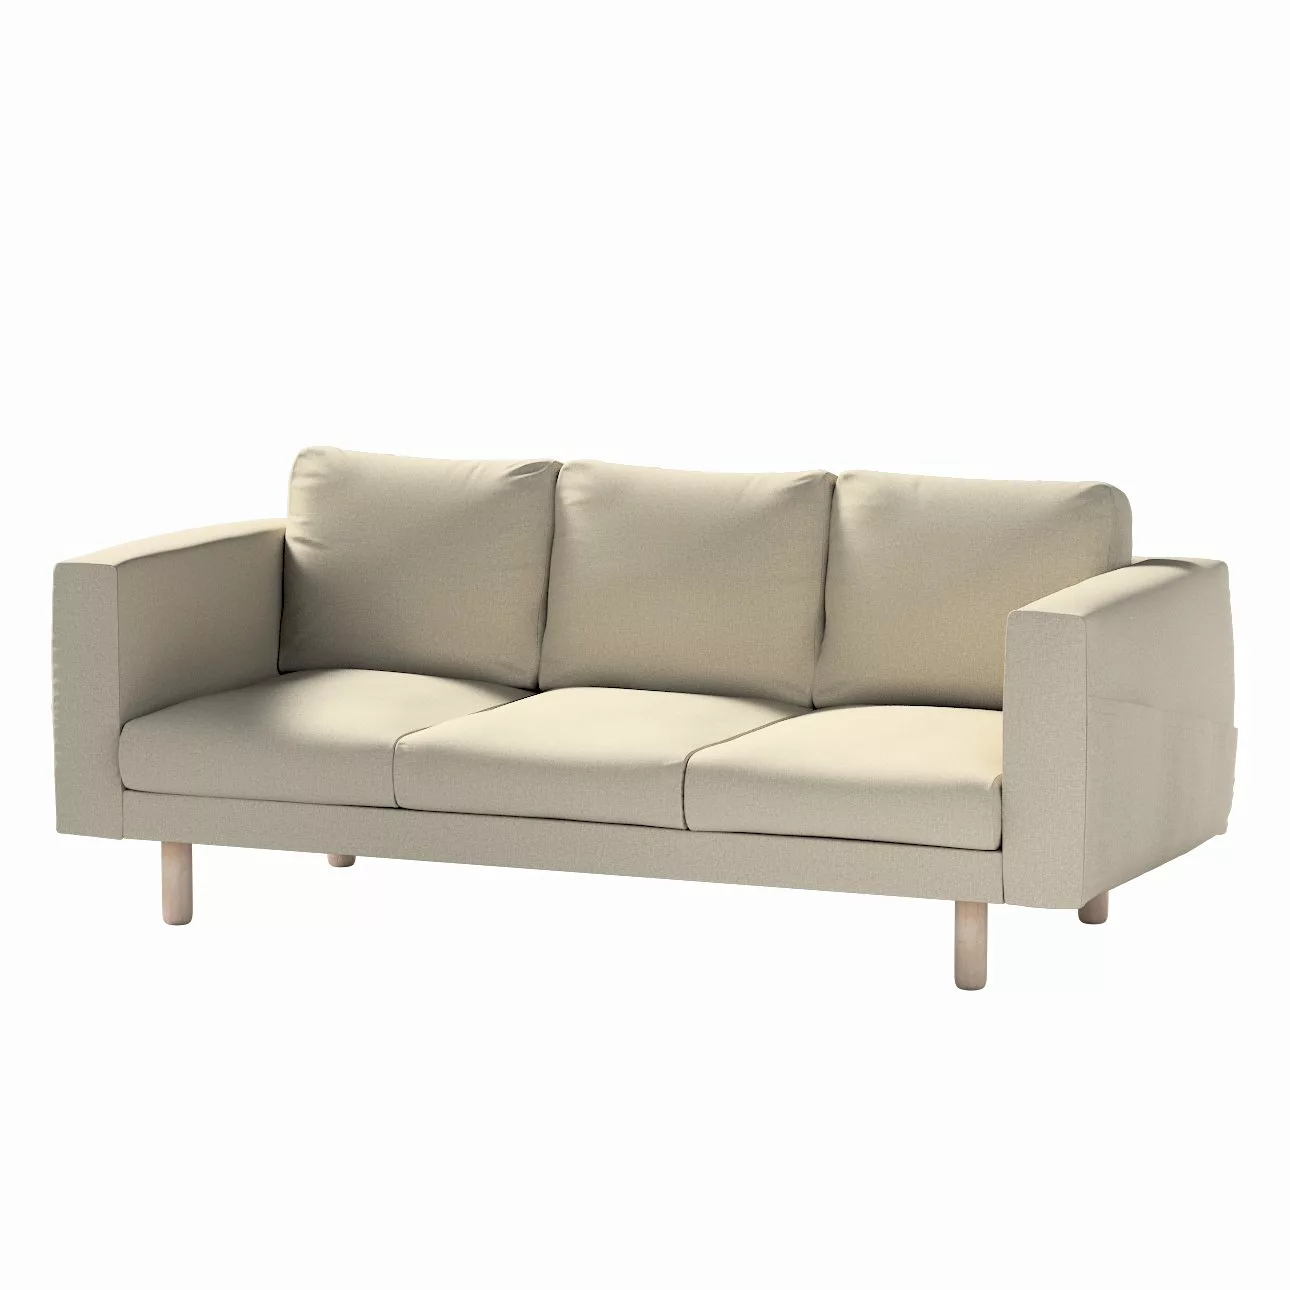 Bezug für Norsborg 3-Sitzer Sofa, grau-beige, Norsborg 3-Sitzer Sofabezug, günstig online kaufen